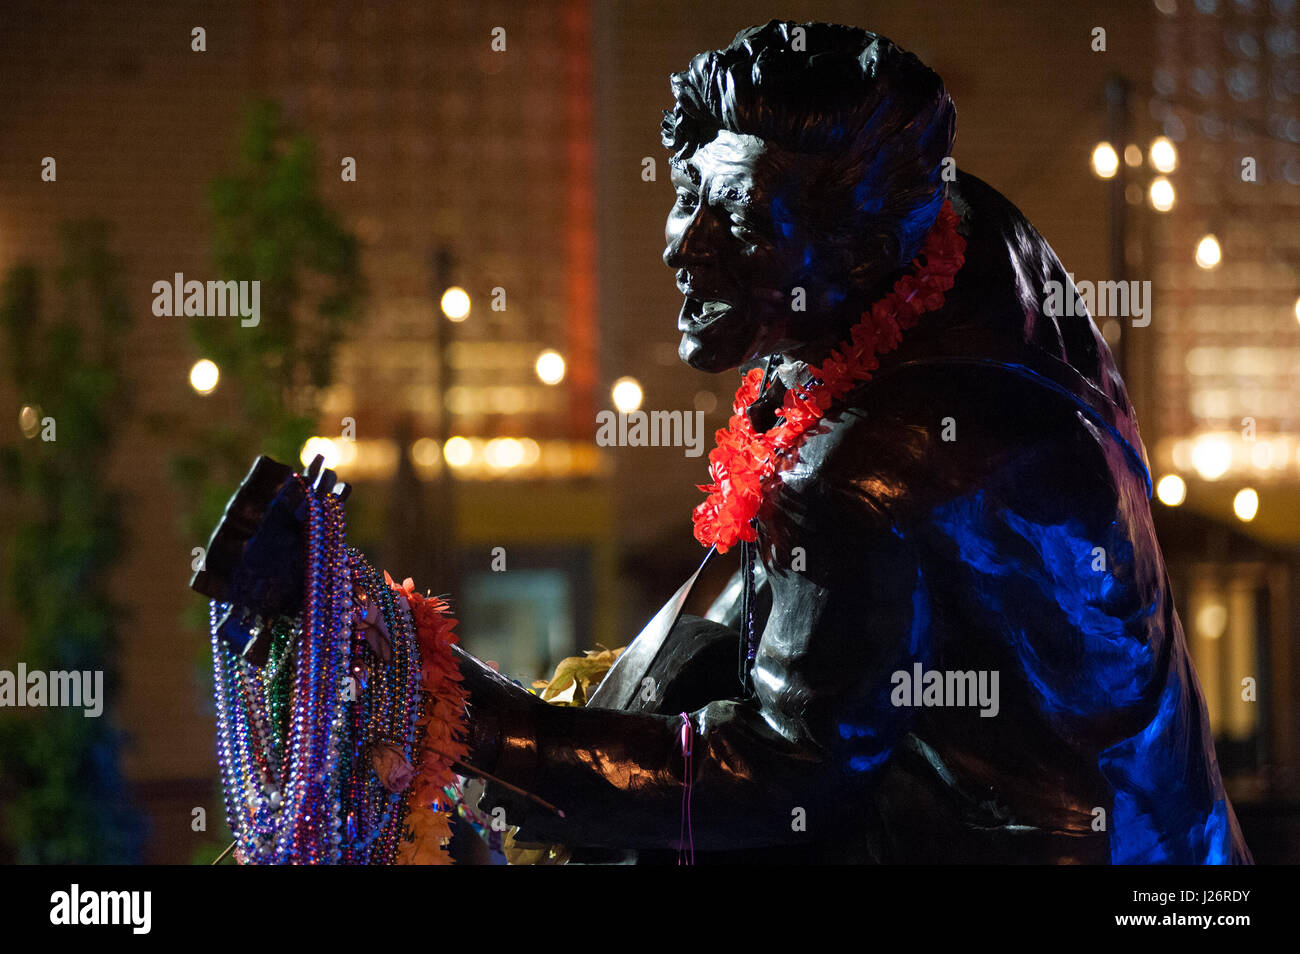 Des fleurs, des notes et des colliers ornent la statue du musicien Chuck Berry du Rock and Roll Hall of Fame après sa mort en 2017. Banque D'Images